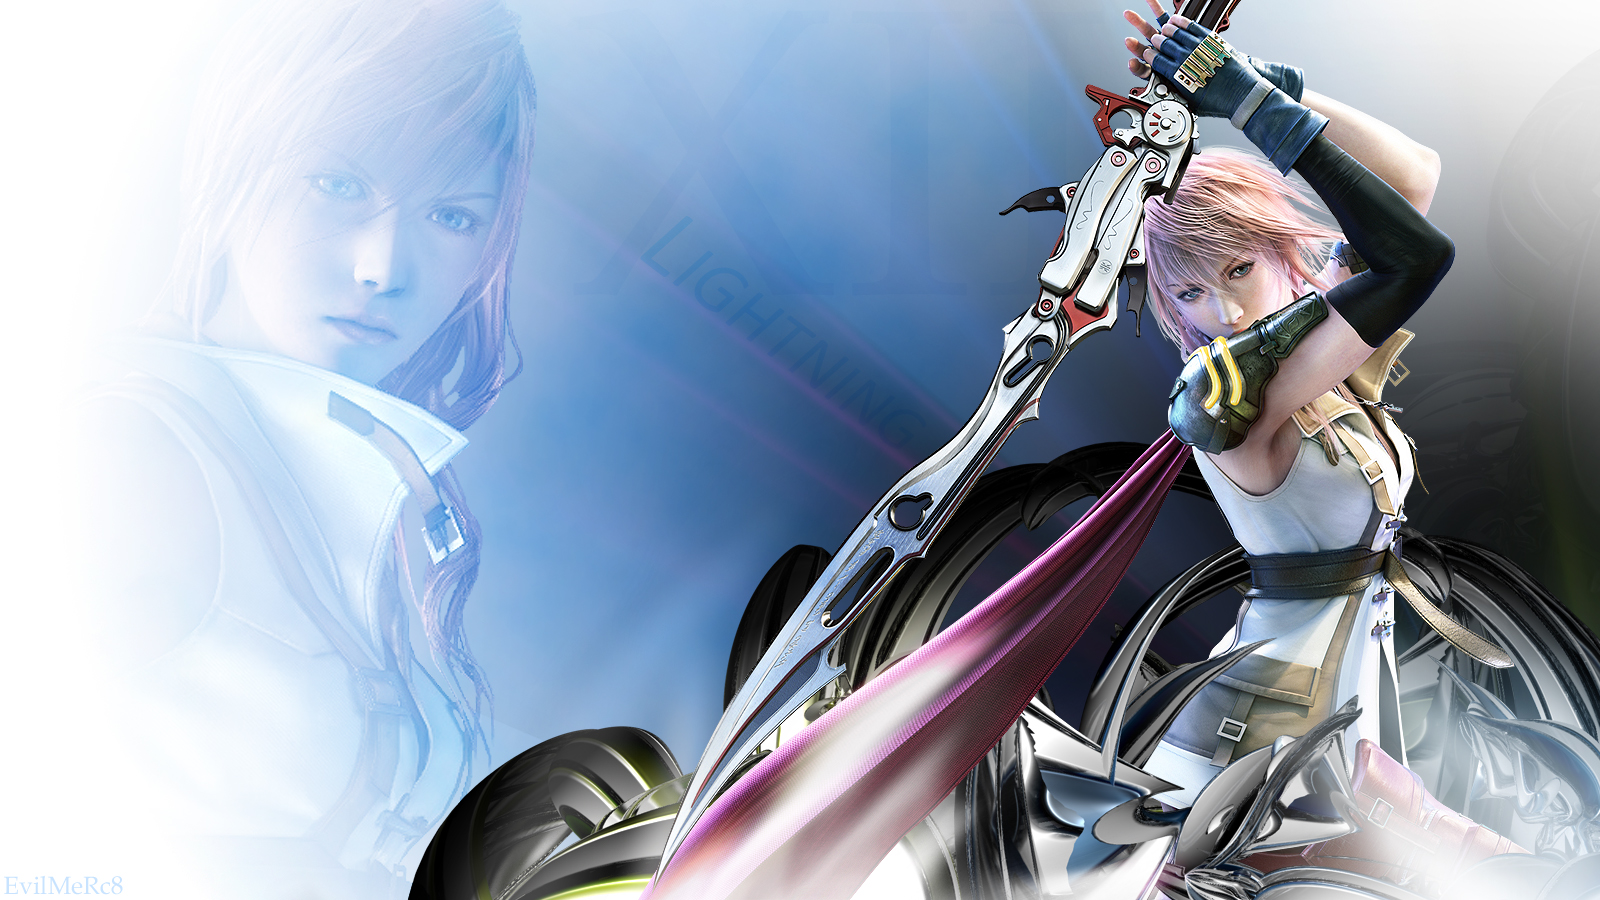 Lightning - Final Fantasy XIII by EvilMeRc8 on DeviantArt